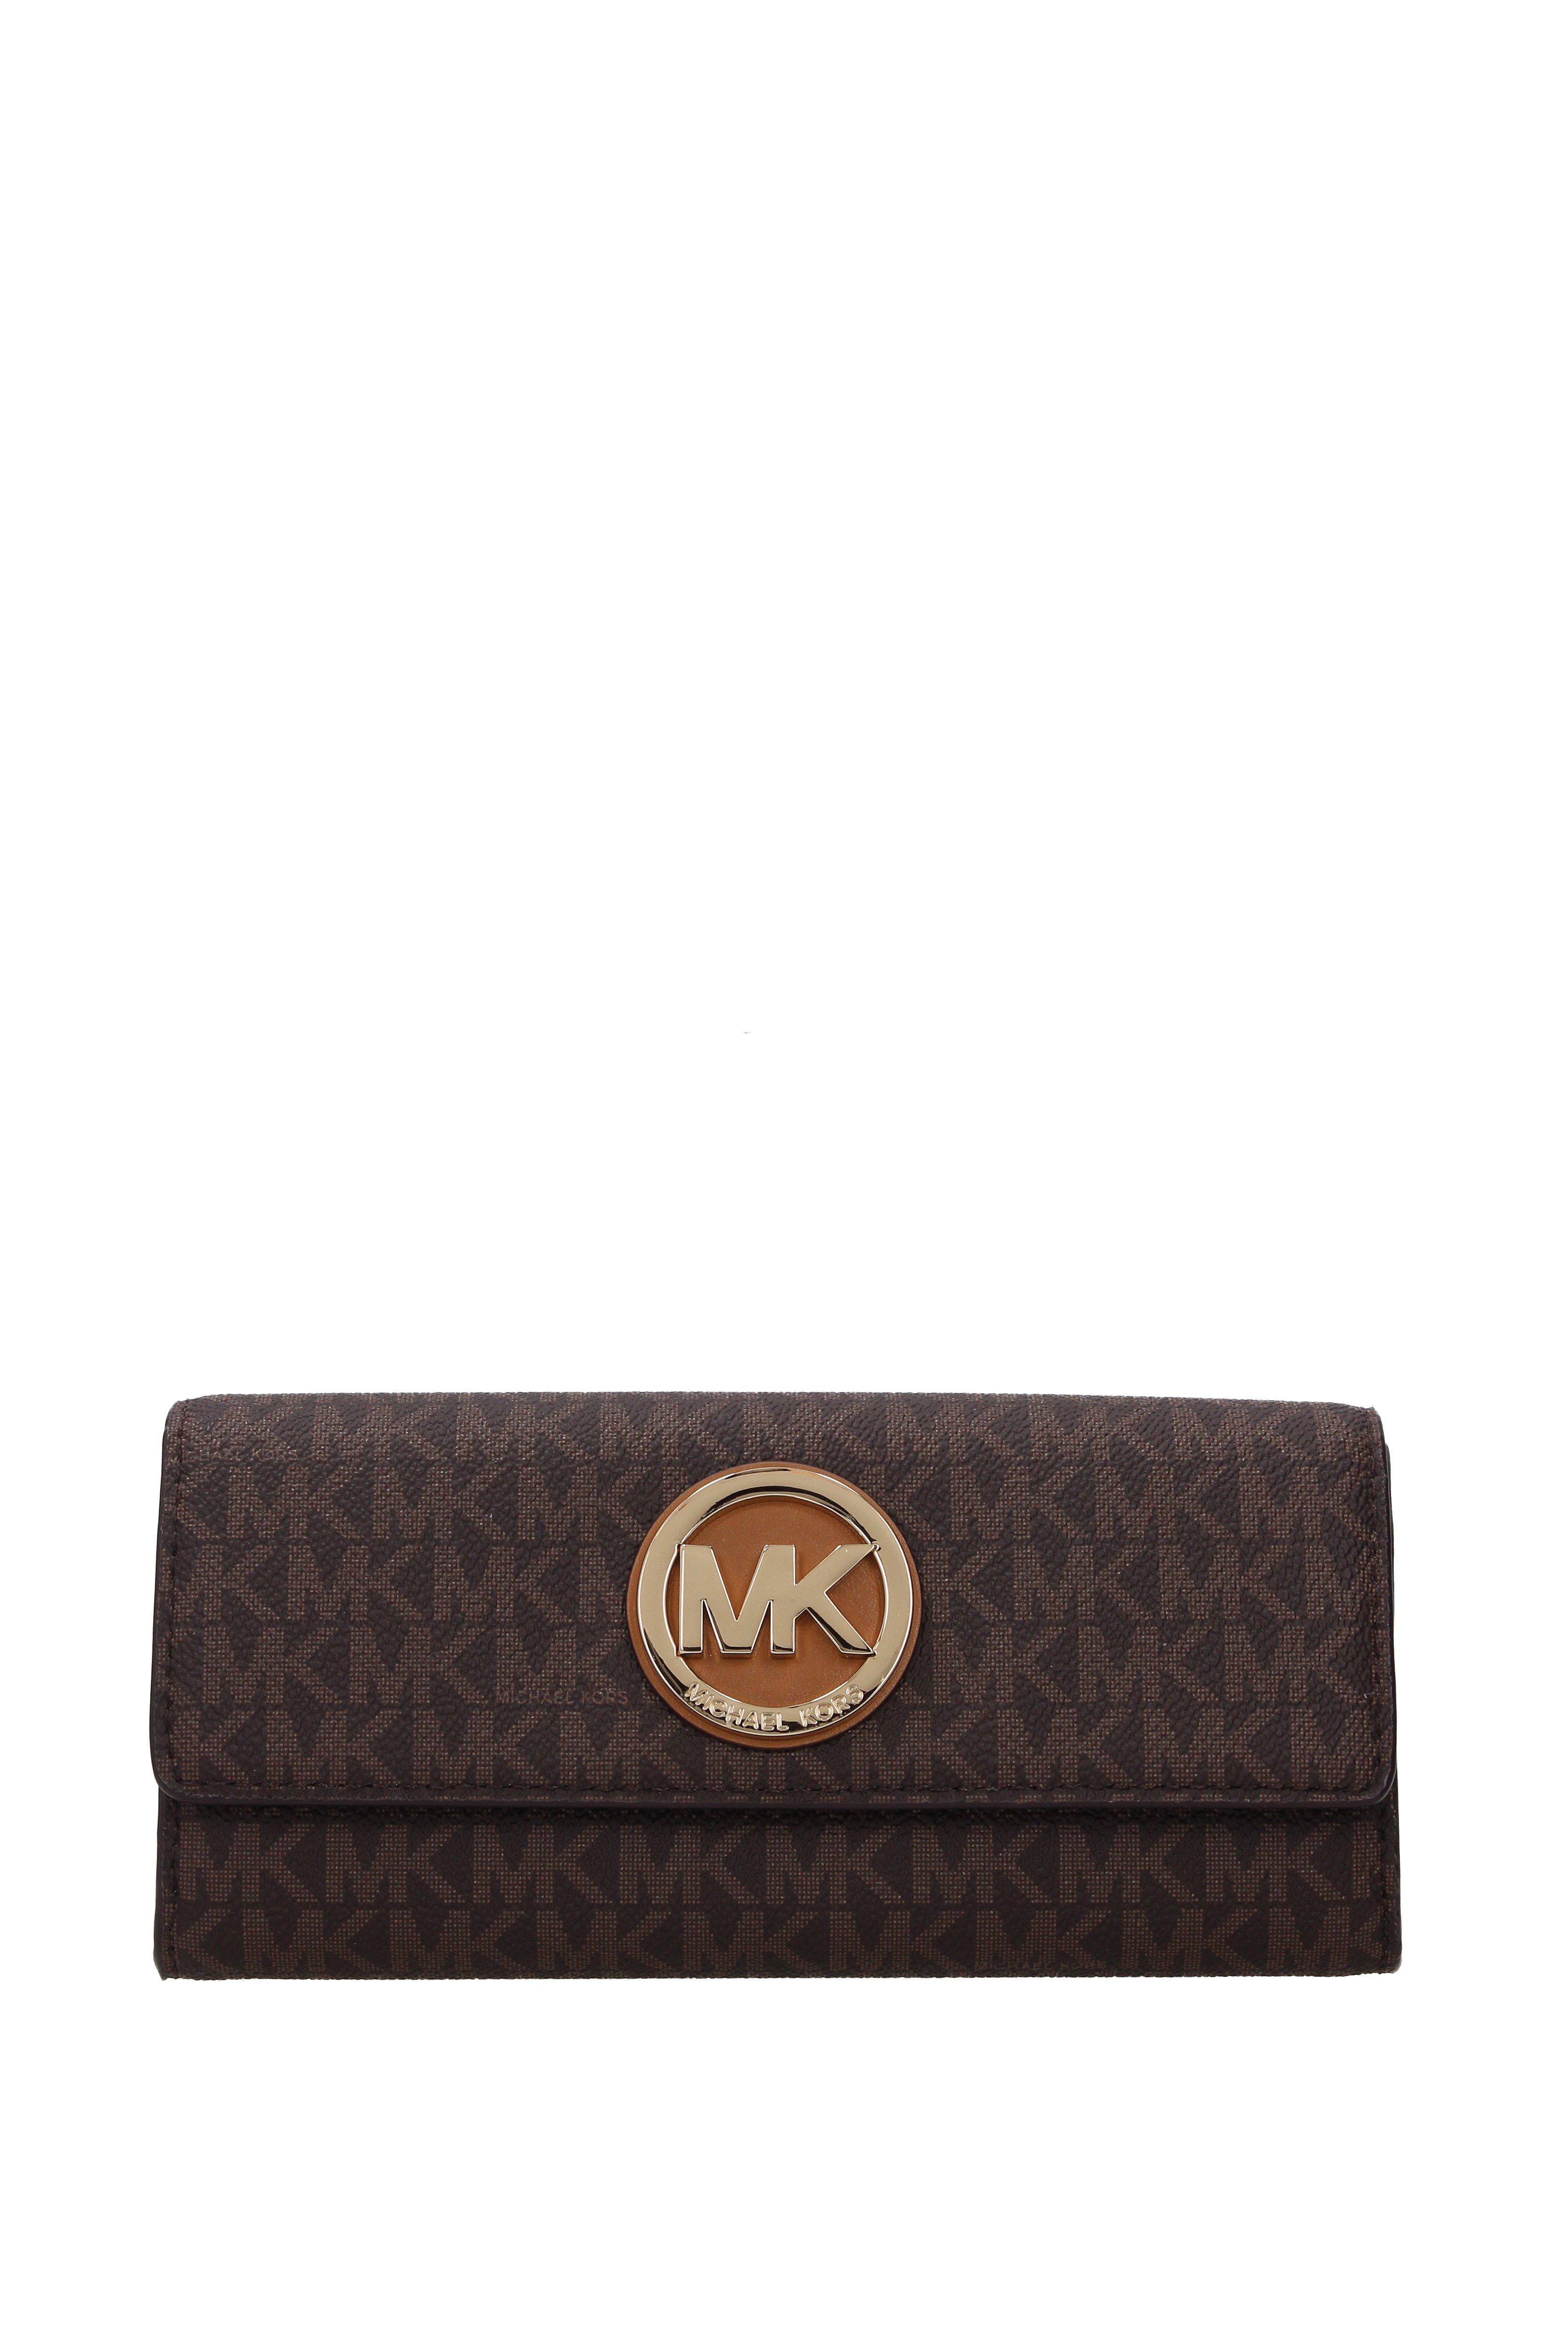 MK women's wallets